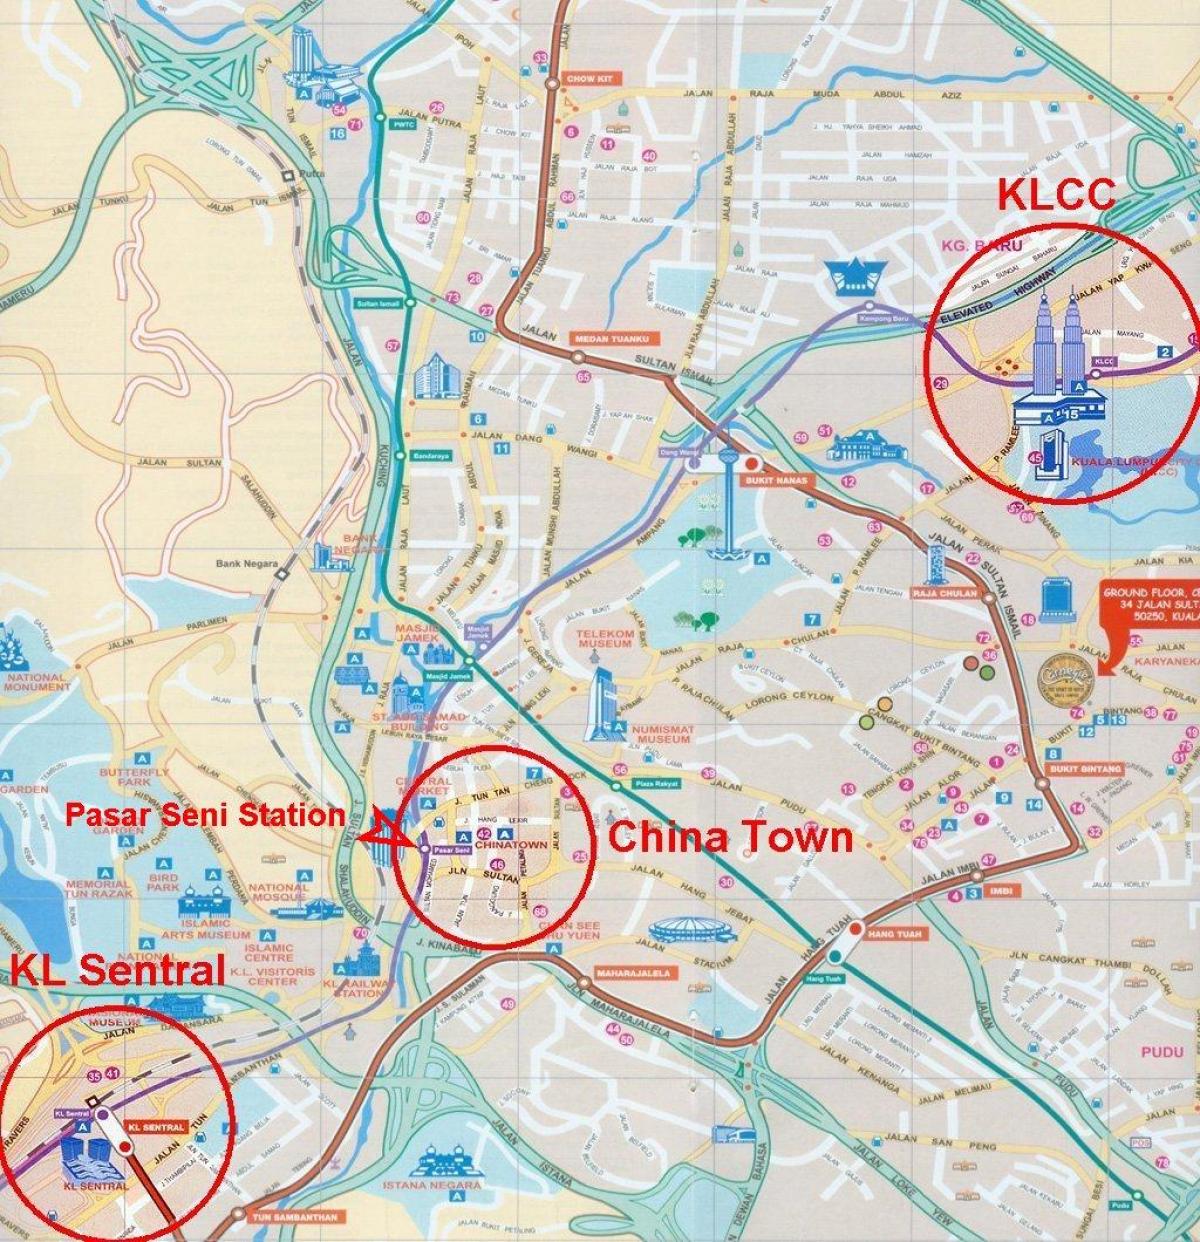 kuala lumpur city térkép